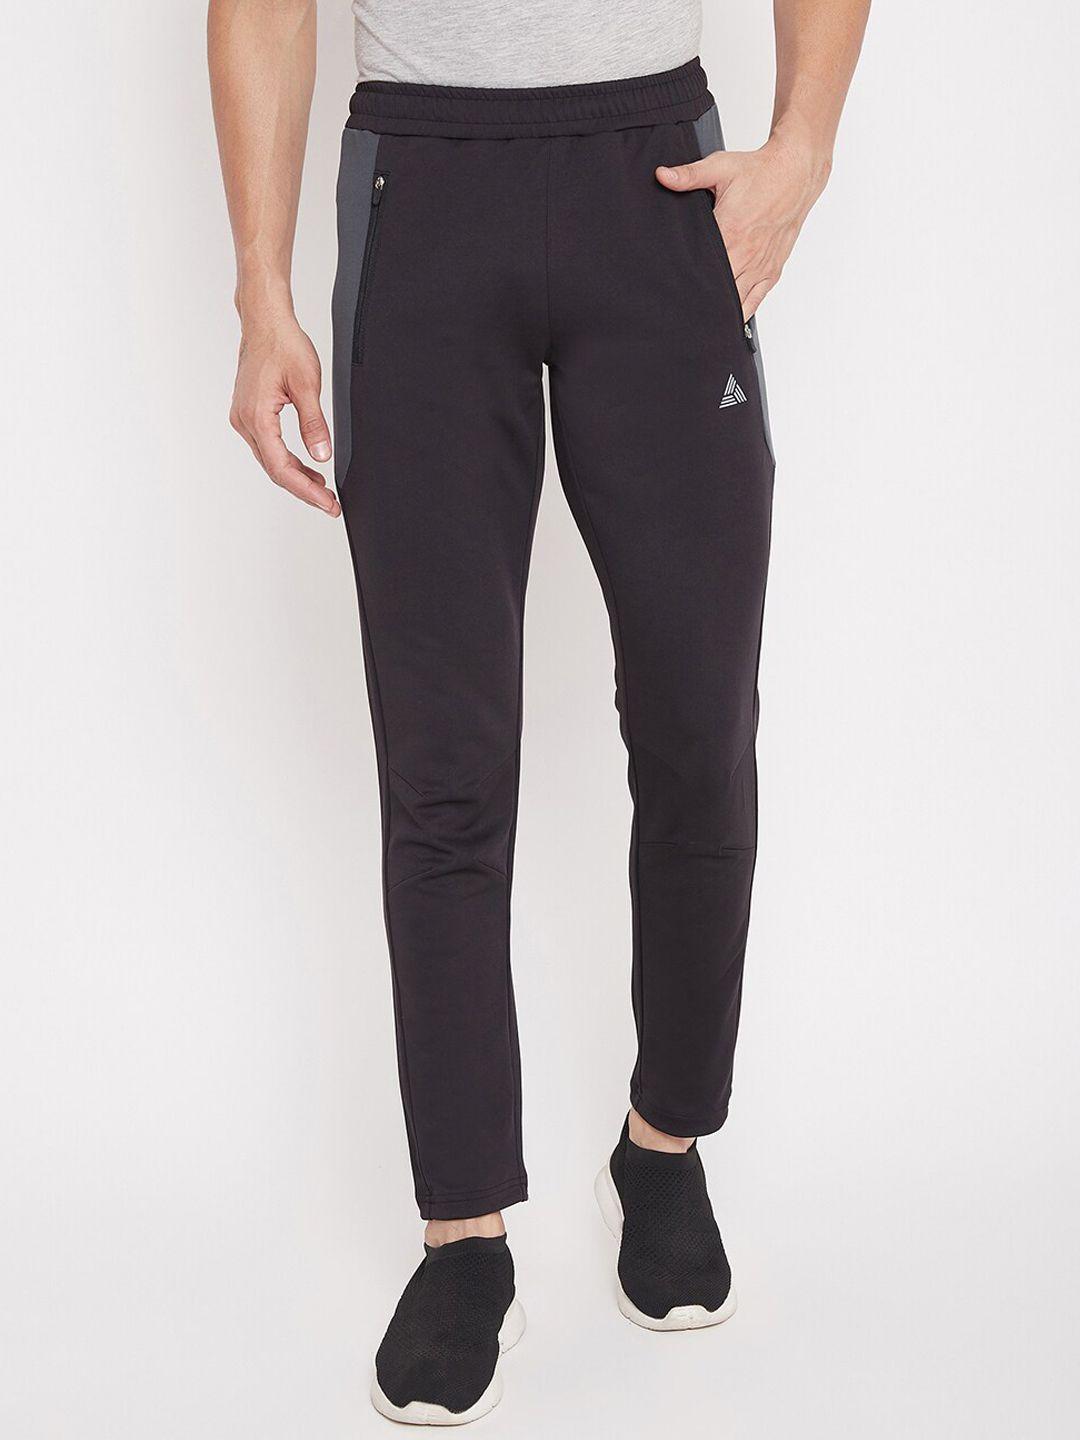 athlisis men black solid slim-fit pure cotton track pants